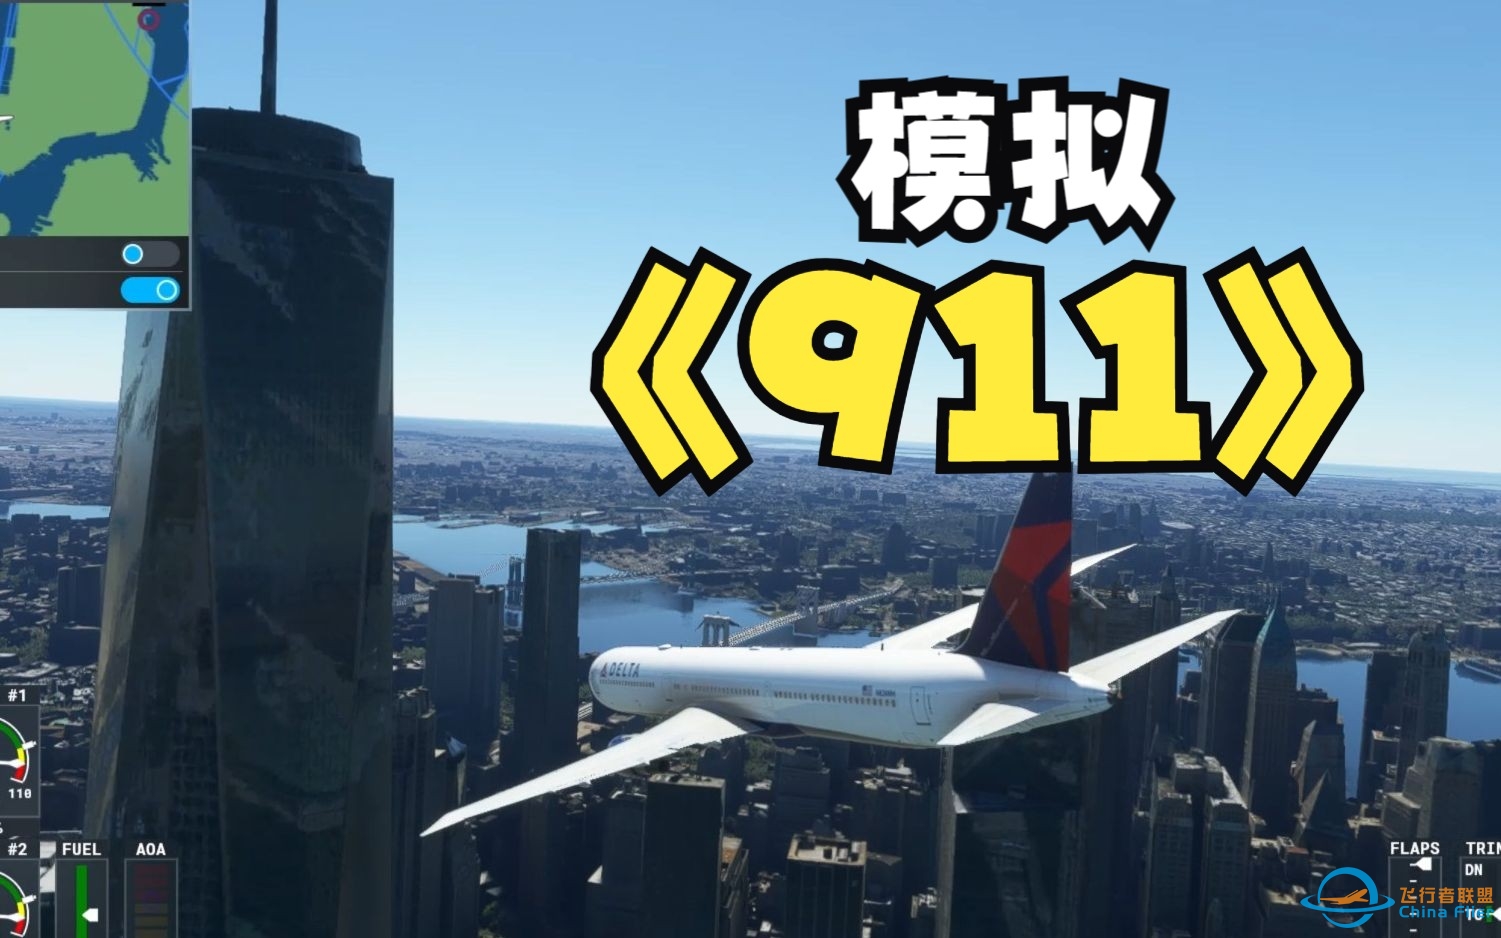 模拟911撞击世贸大厦事件  微软飞行模拟2020-9177 